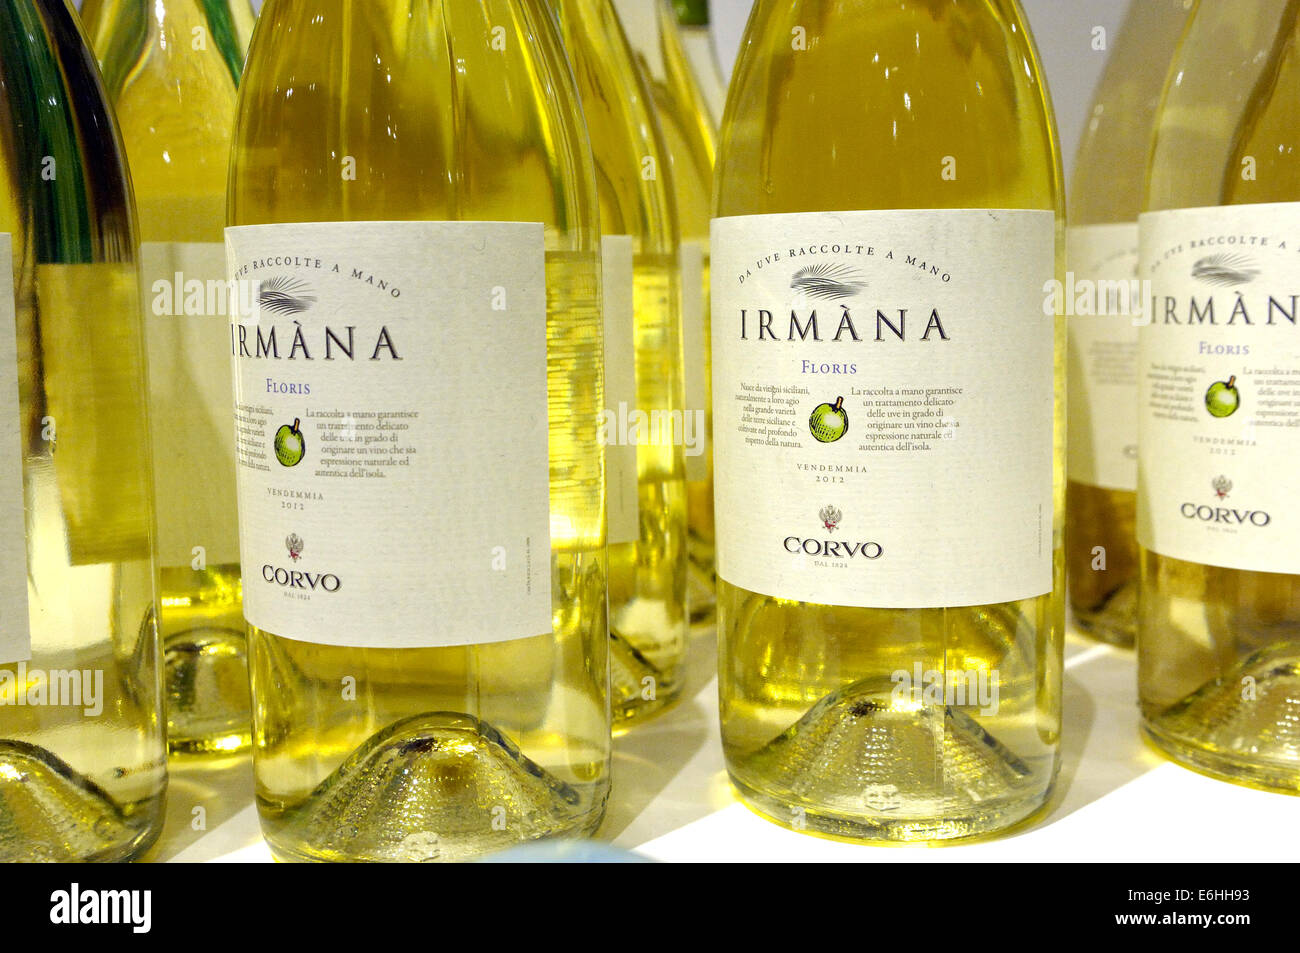 eine Flaschen Irmana weißen Wein, Corvo Label, Florio Weingut, Marsala, Sizilien Stockfoto